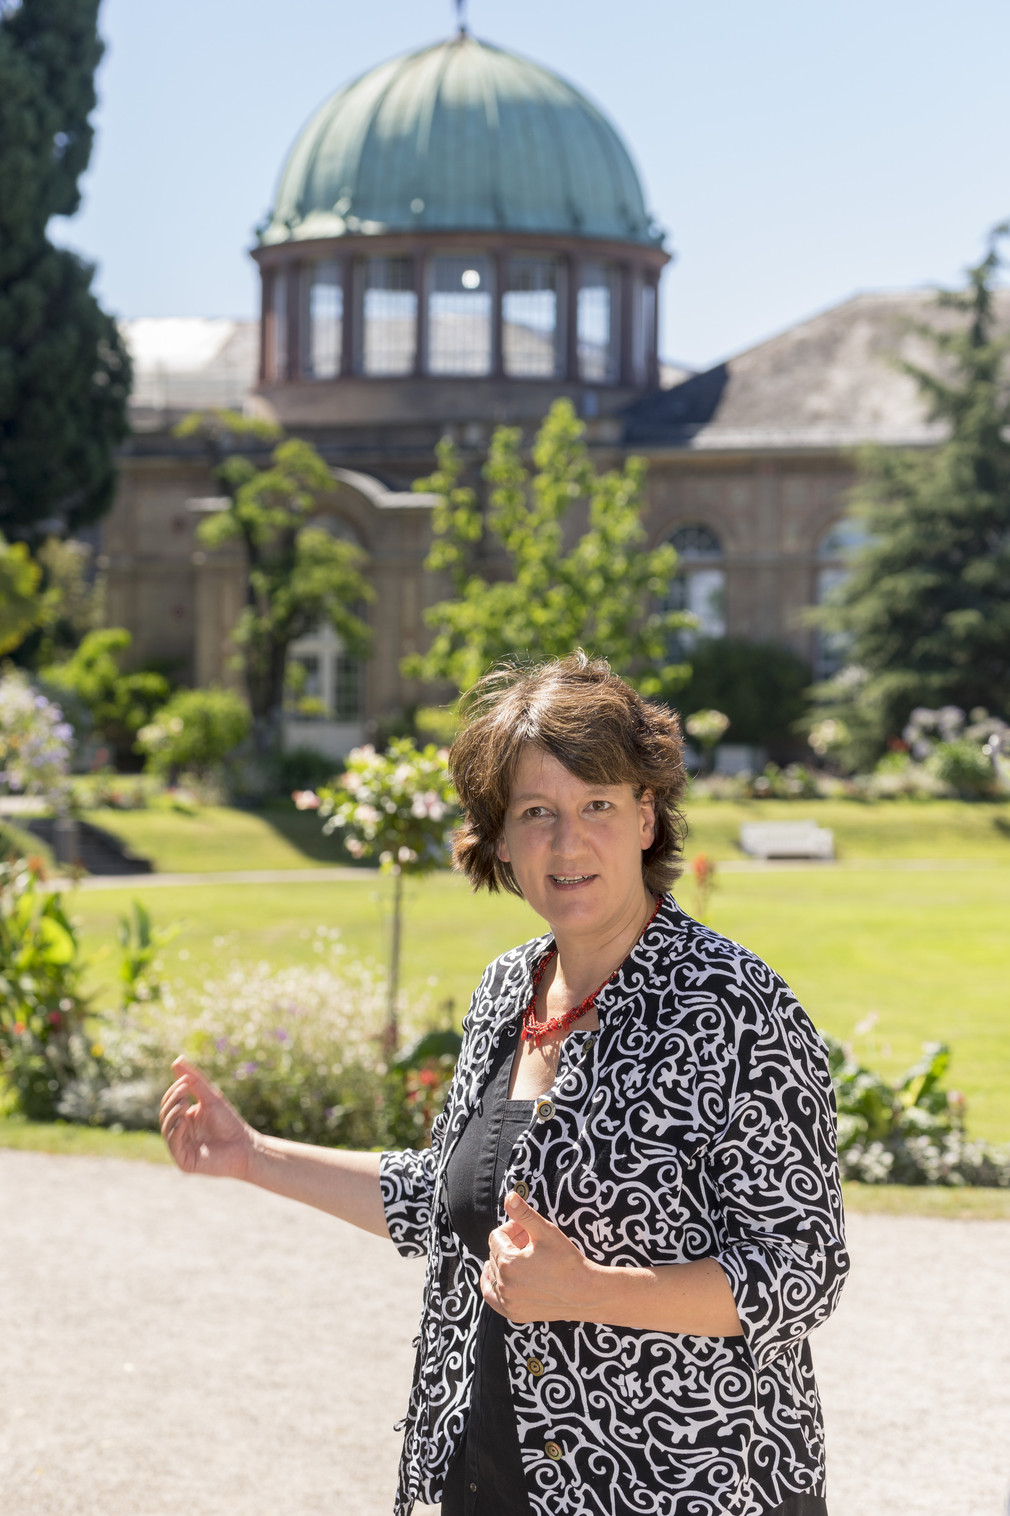 taatssekretärin Dr. Gisela Splett besucht im Rahmen der Schlösserreise 2016 den Botanischen Garten.